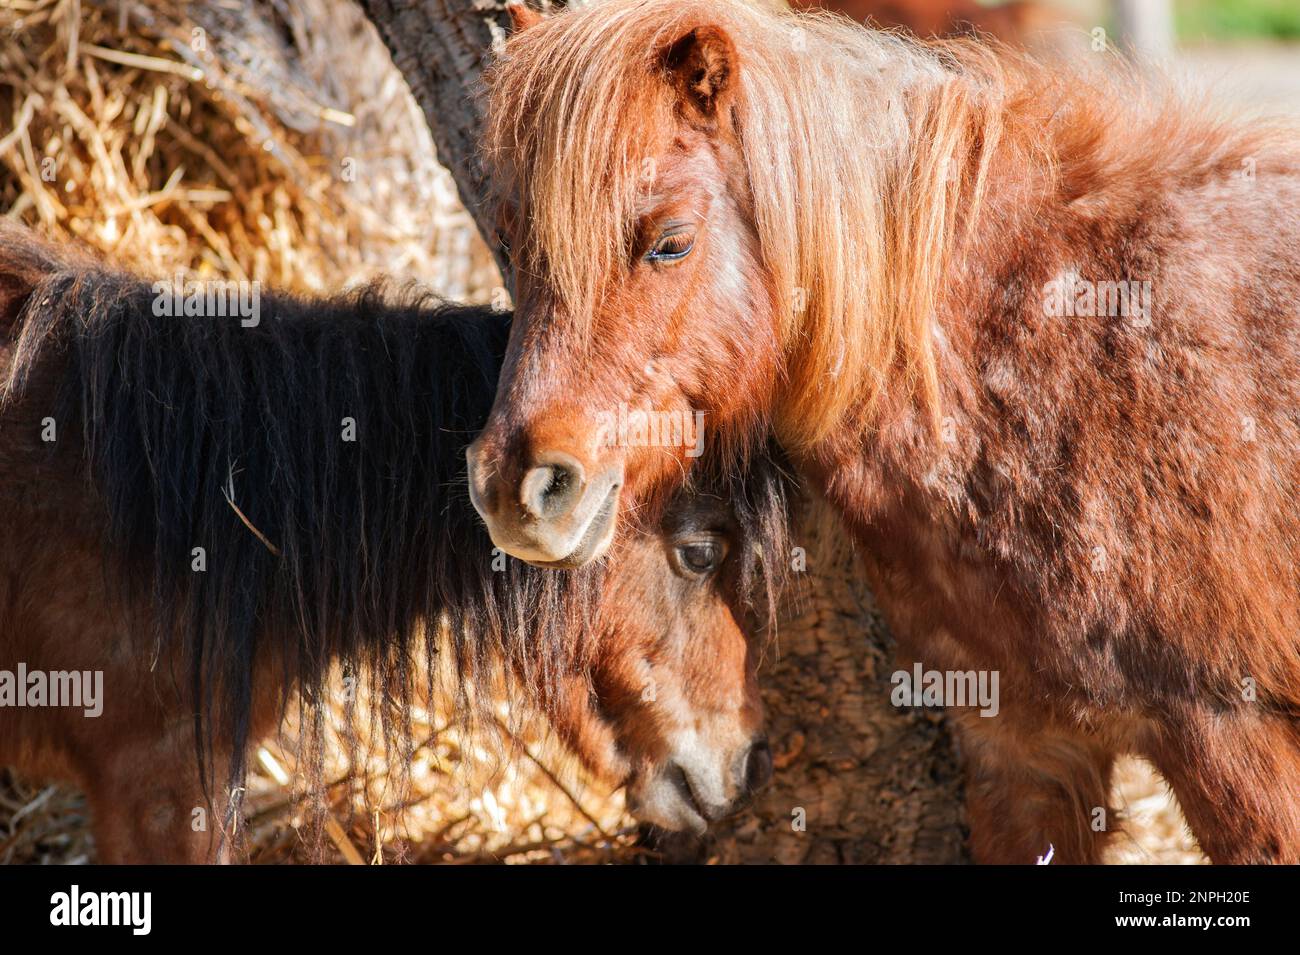 Brown Pony horse portrait. Stock Photo